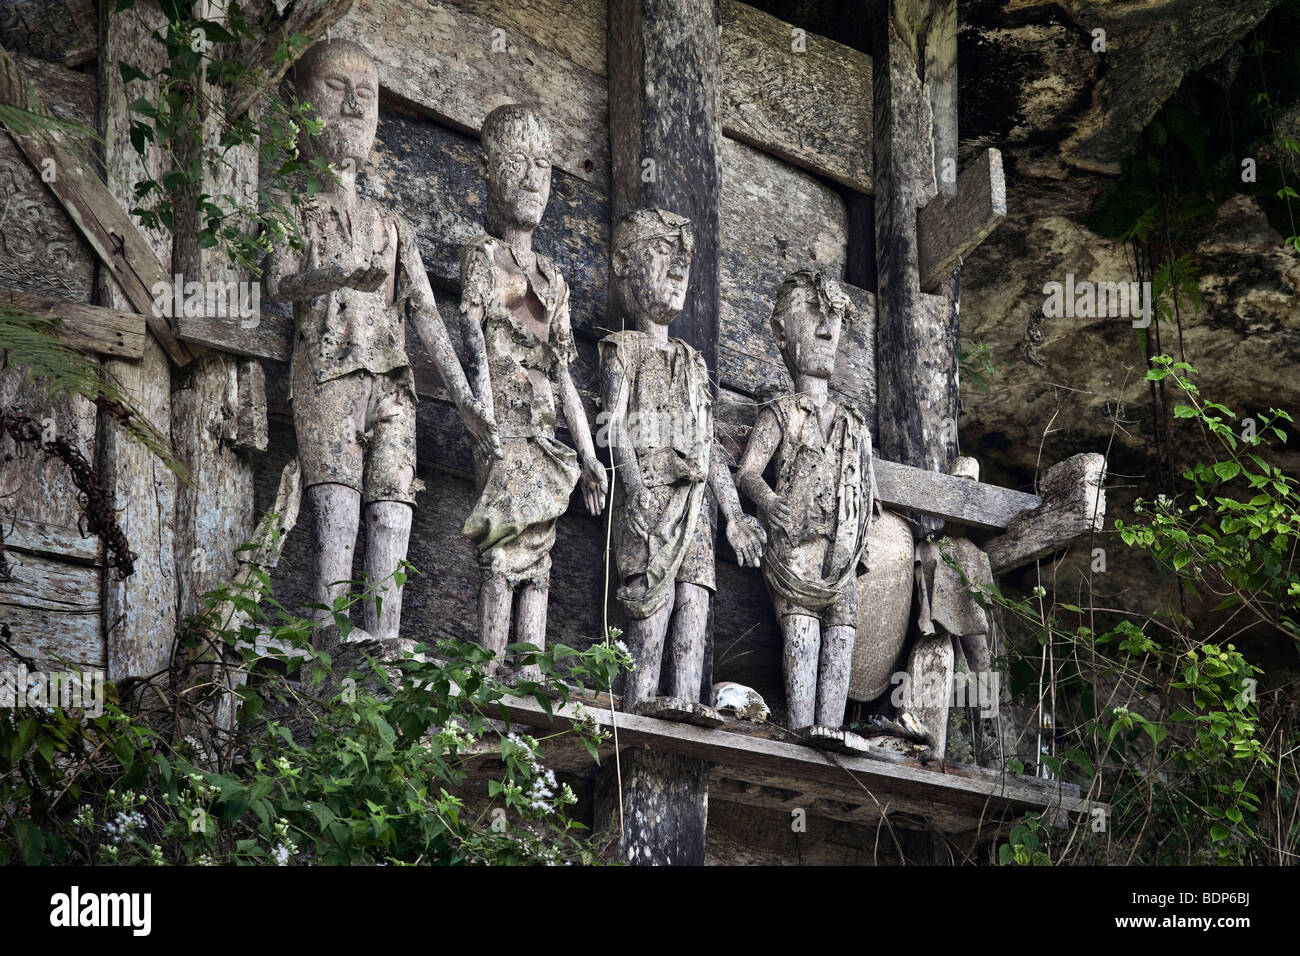 L'Indonésie, Sulawesi, Tana Toraja, Marante village, tombes en pierre avec des effigies des morts connus sous le nom de tau tau Banque D'Images